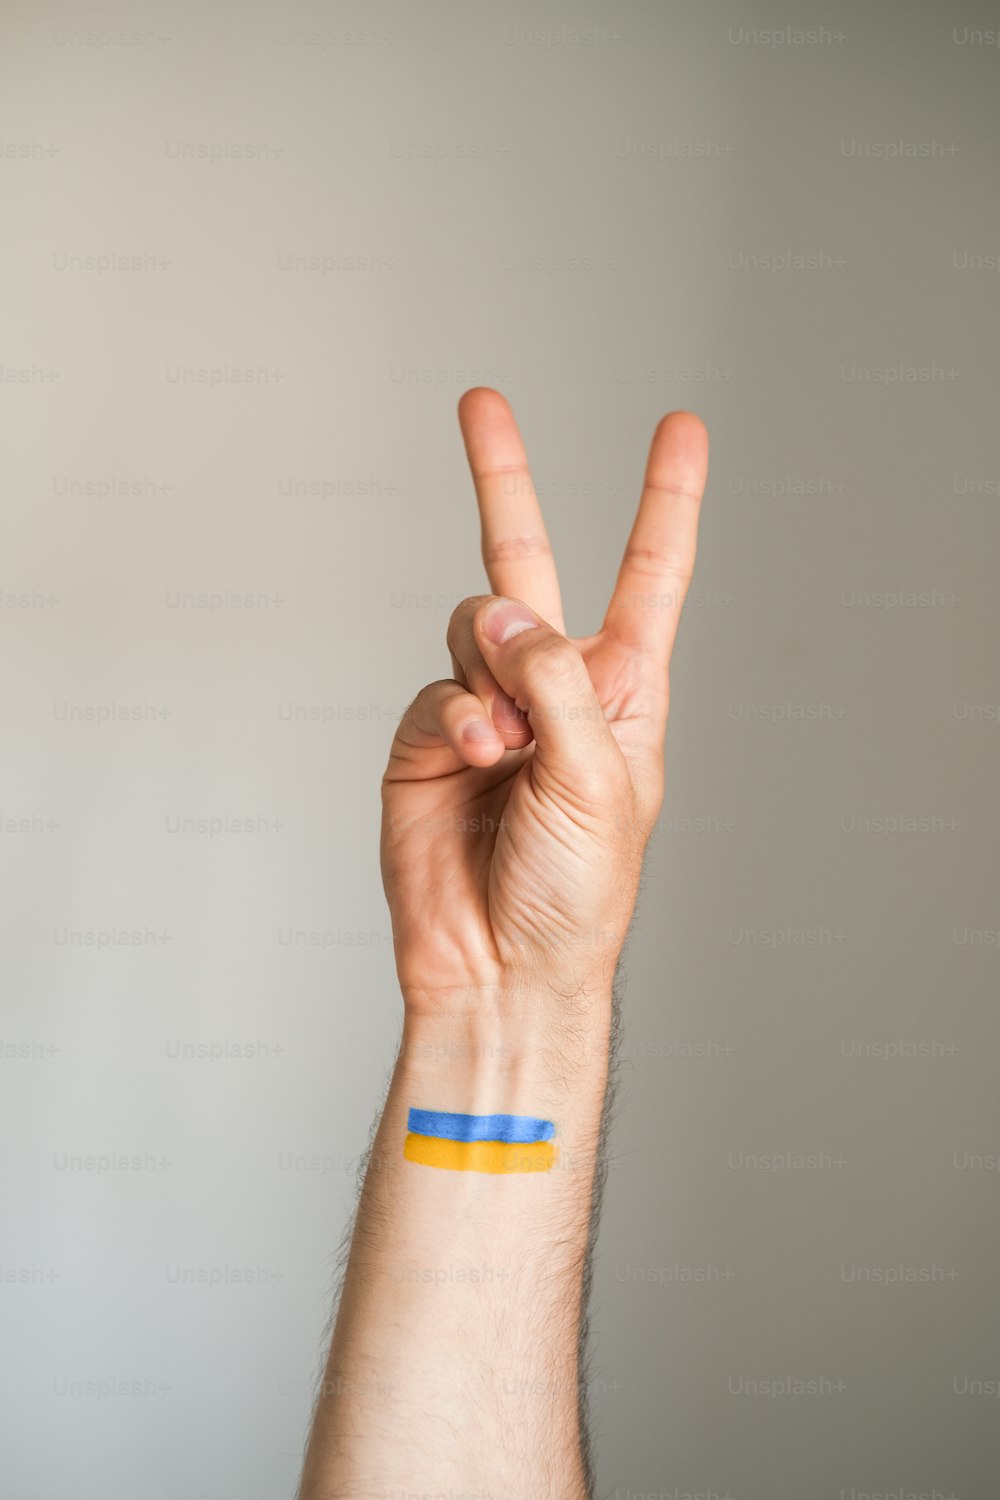 uma pessoa fazendo um sinal de paz com a mão